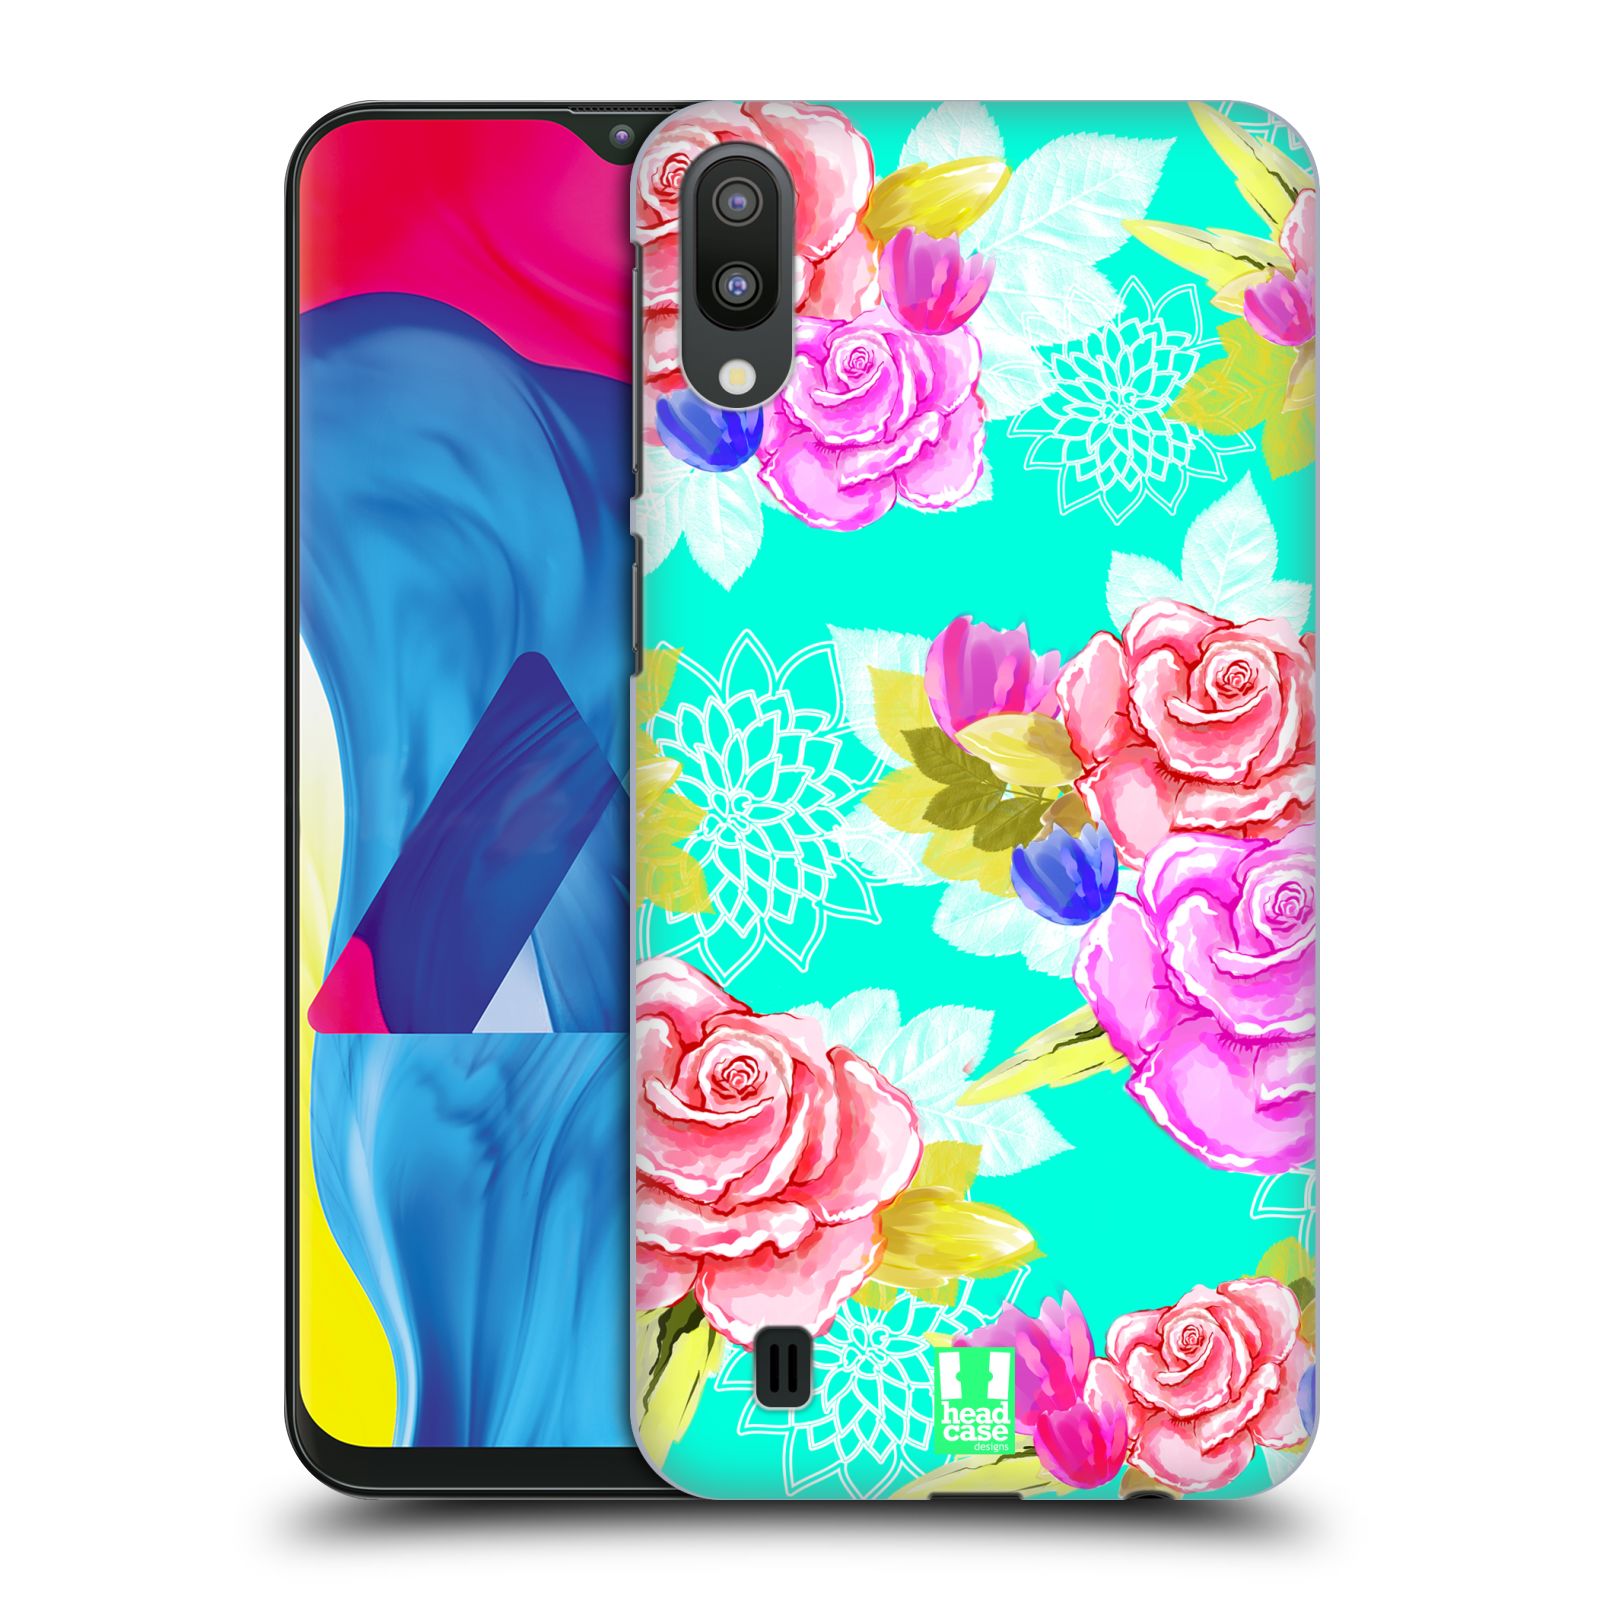 Plastový obal HEAD CASE na mobil Samsung Galaxy M10 vzor Malované květiny barevné AQUA MODRÁ